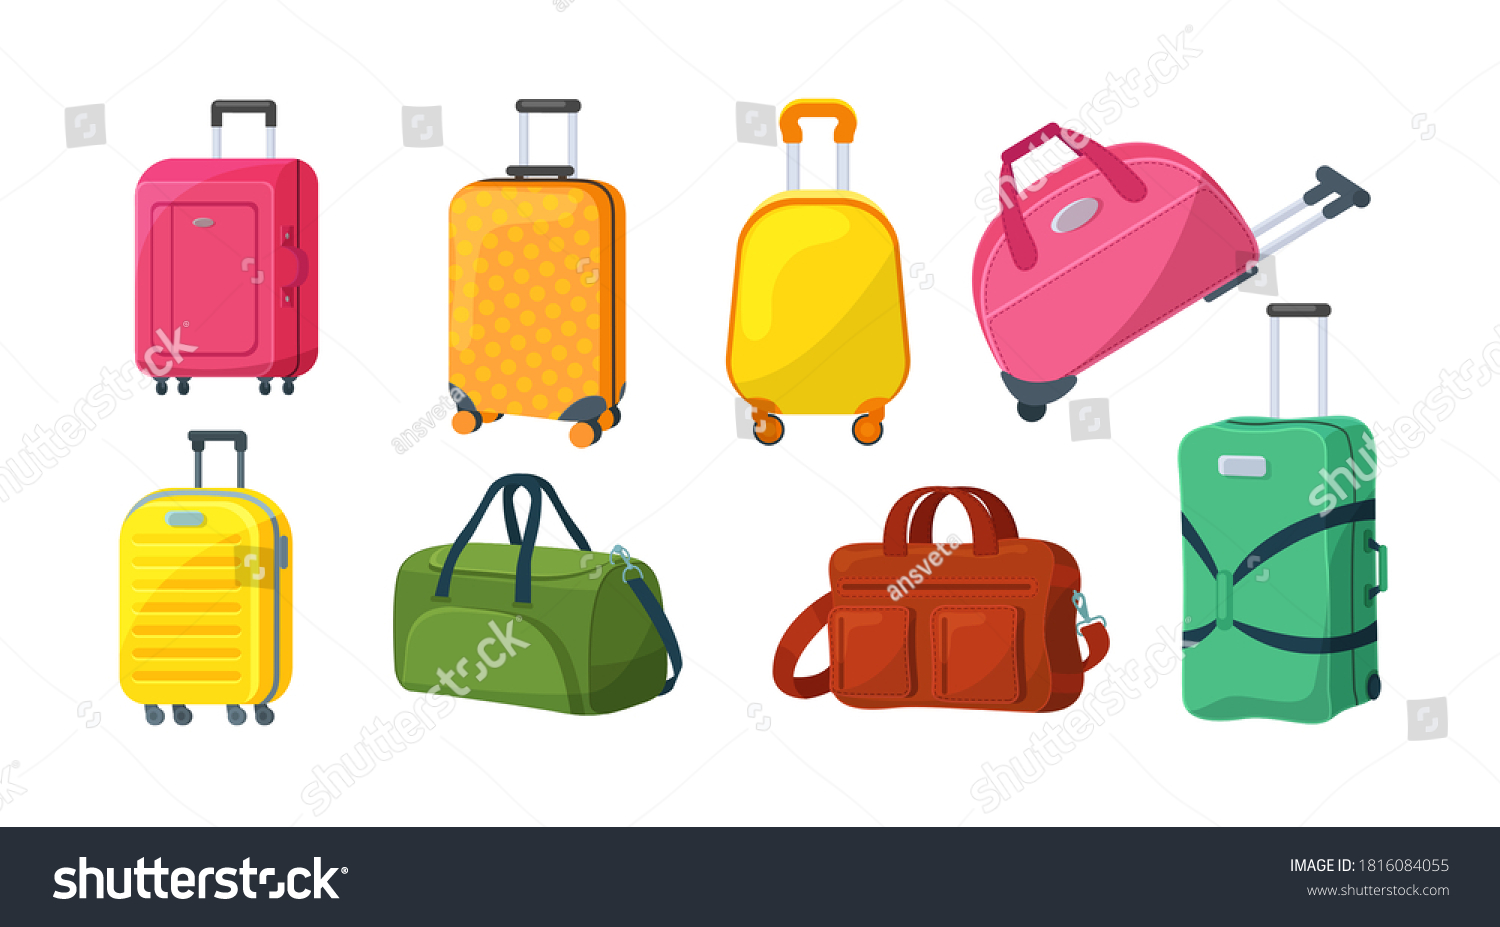 Конкурс детям Собери рюкзак или чемодан в путешествие